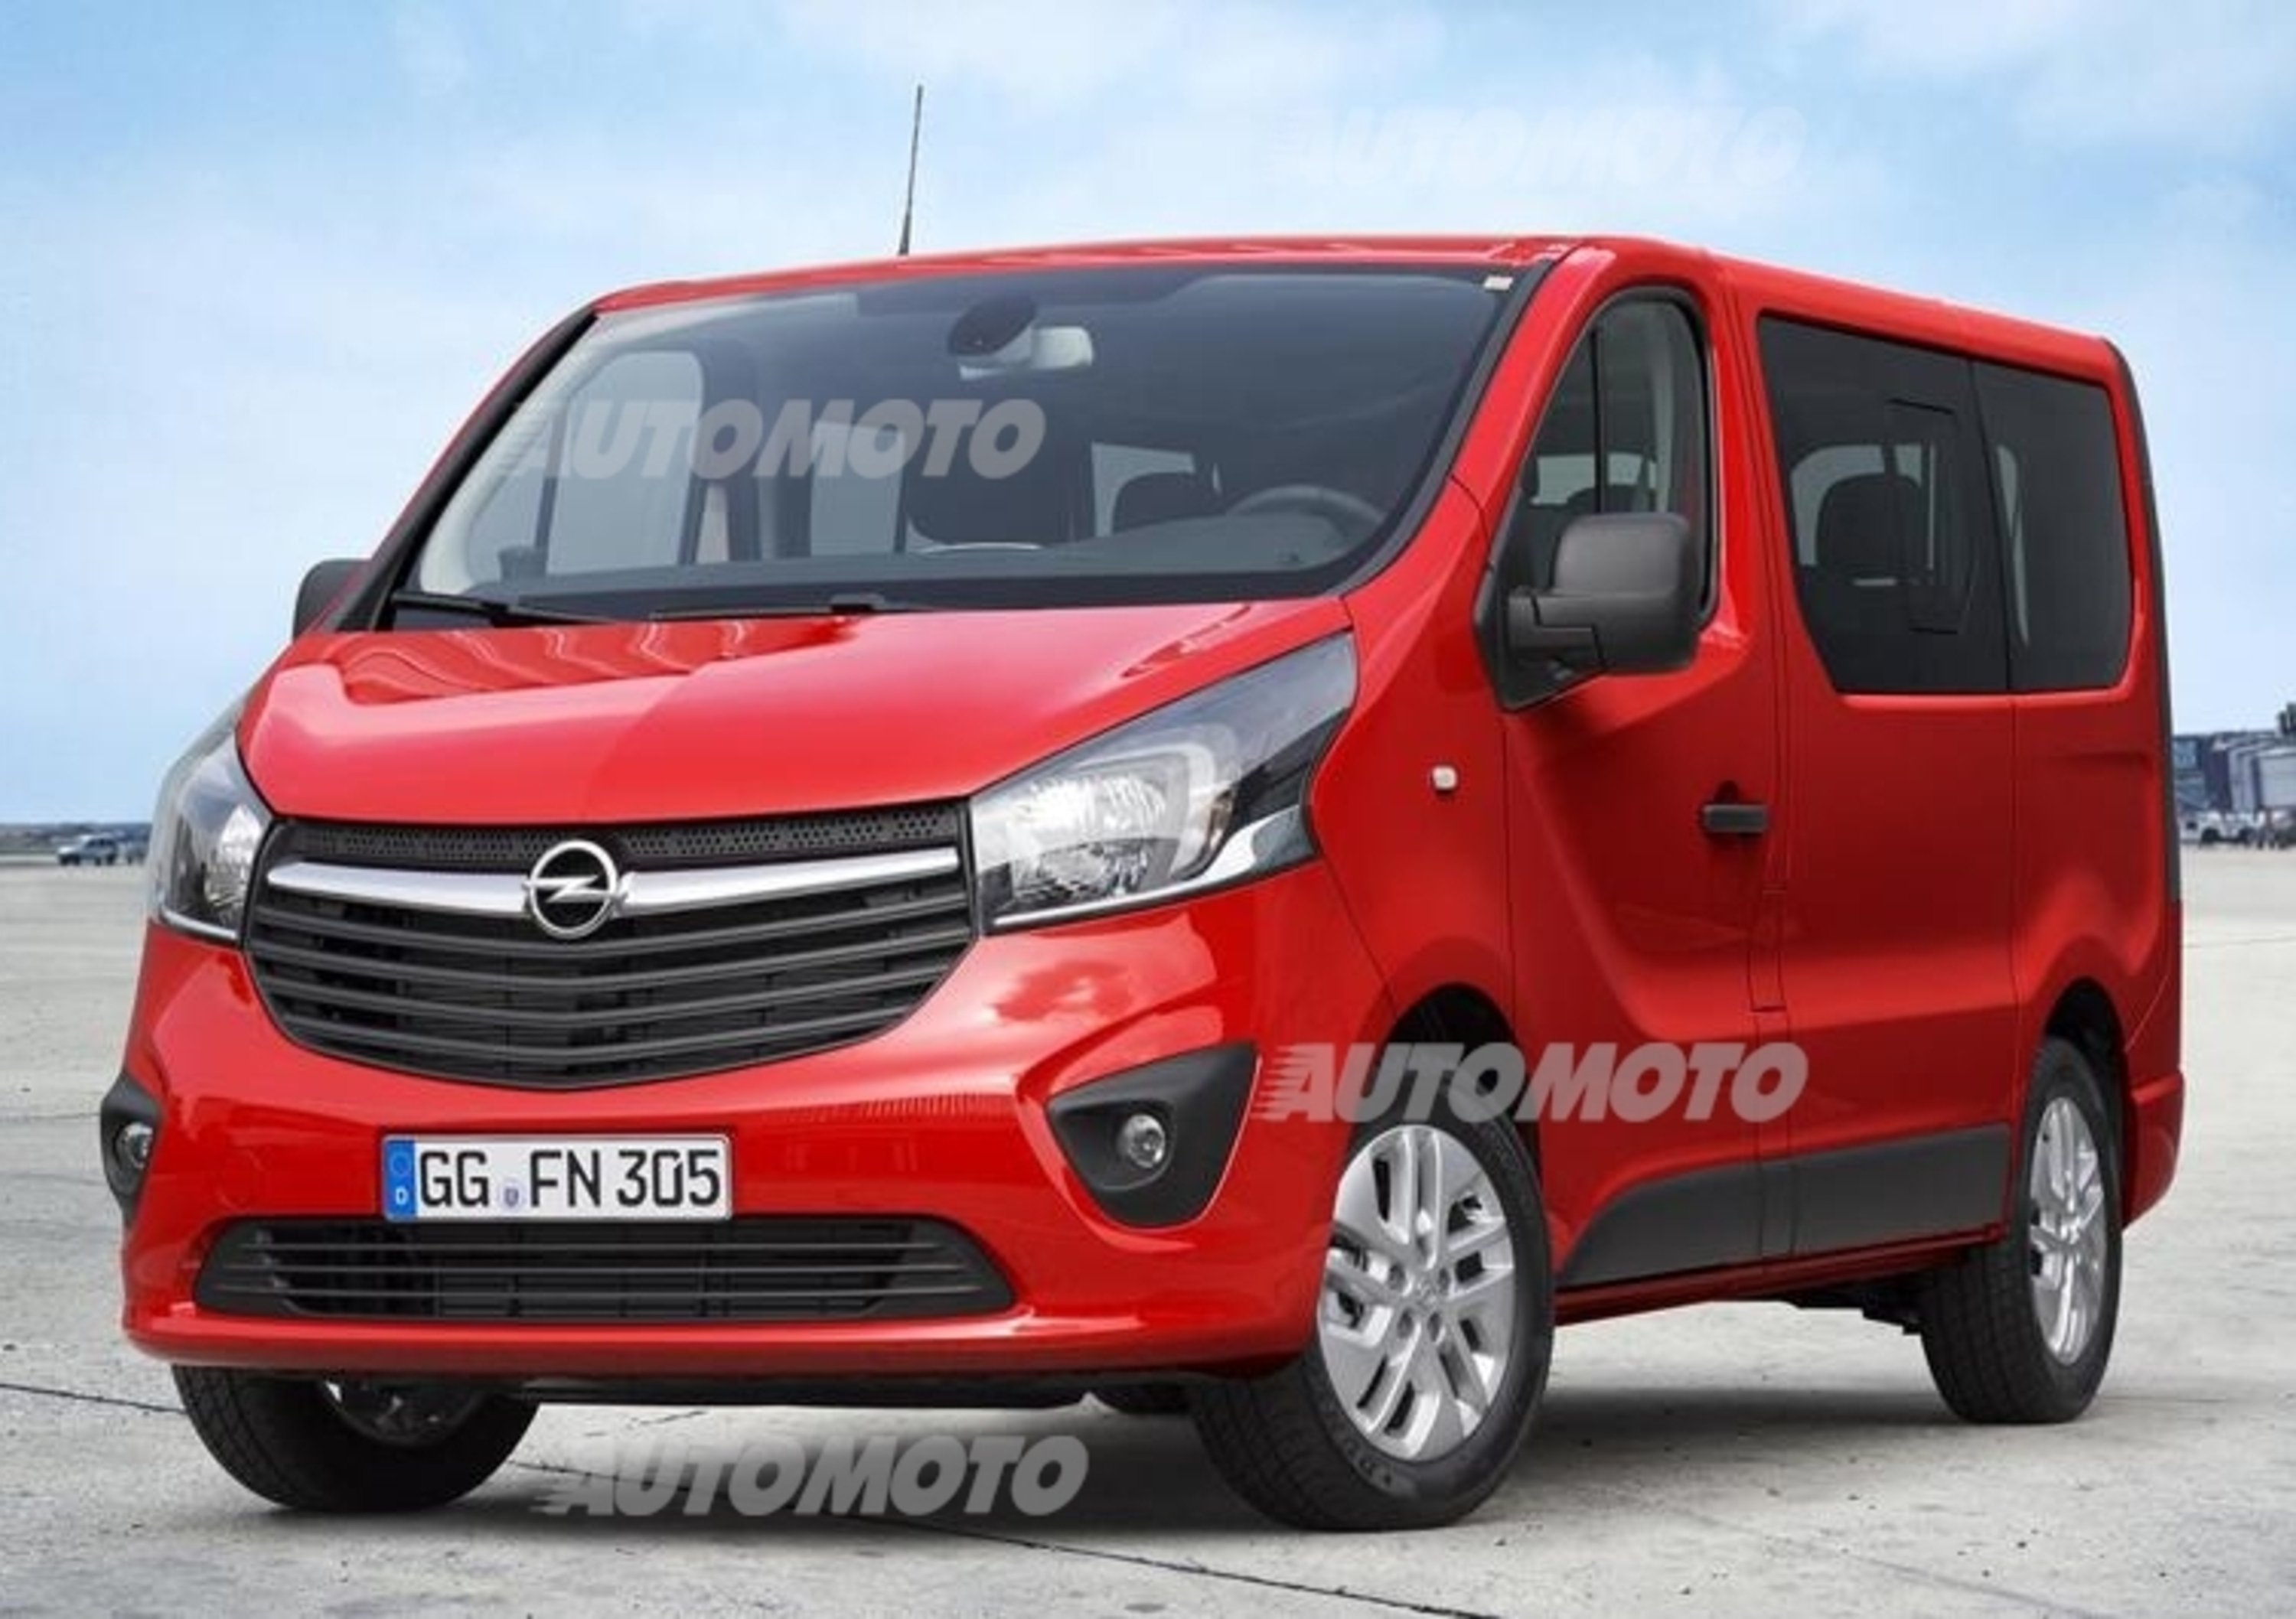 Nuovo Opel Vivaro: motori diesel di ultima generazione e IntelliLink